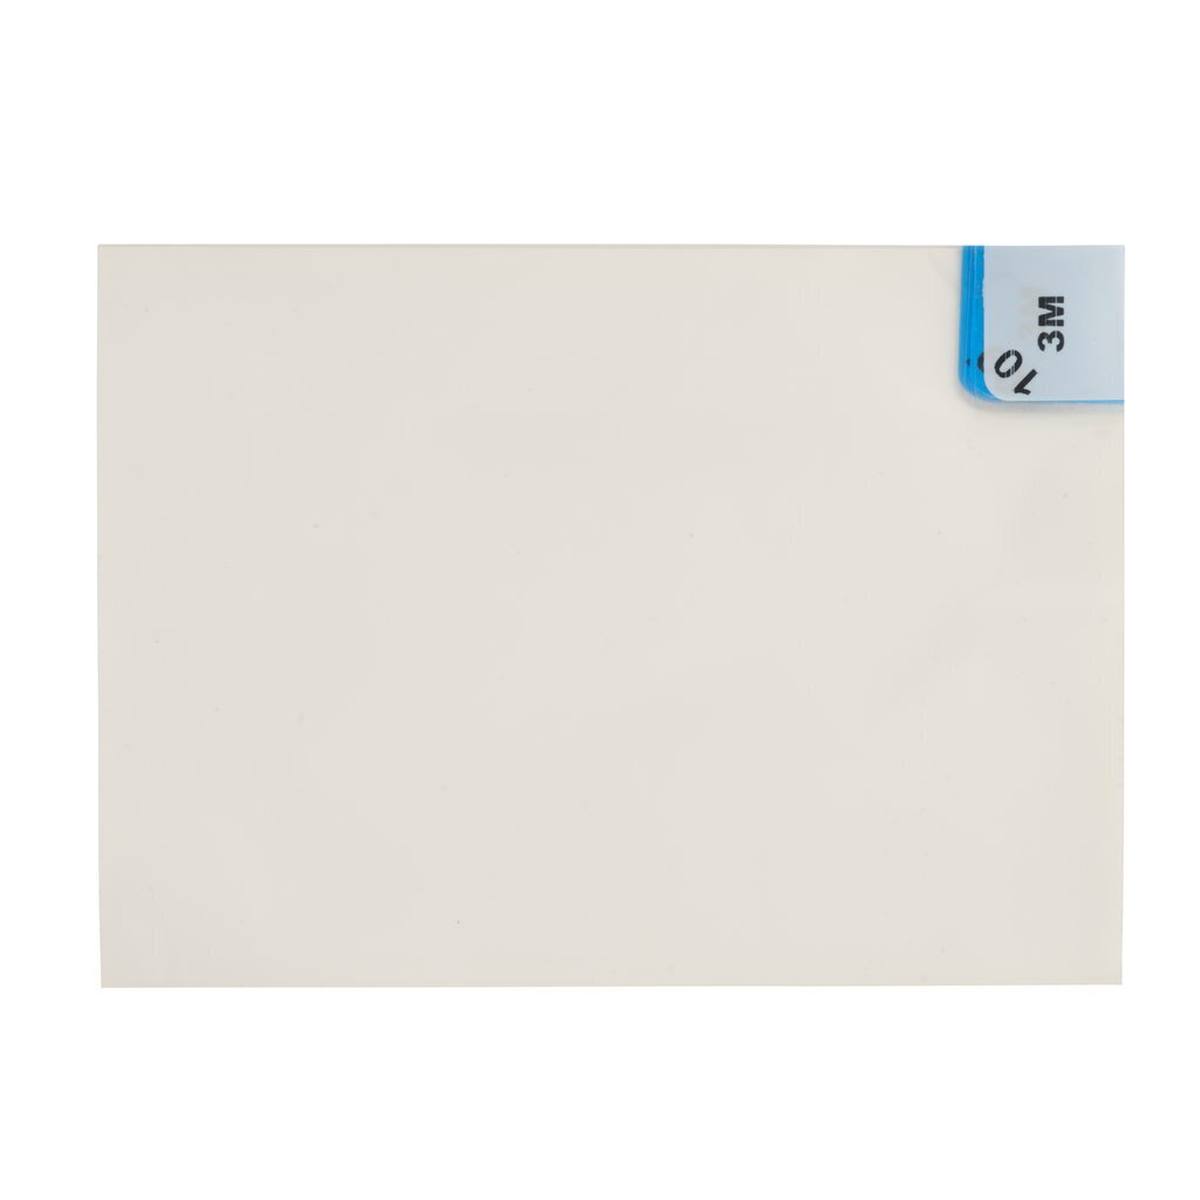 3M 4300 Tapis adhésif pour poussières fines Nomad, blanc, 0,9m x 0,45m, 40pcs couches de polyéthylène transparent